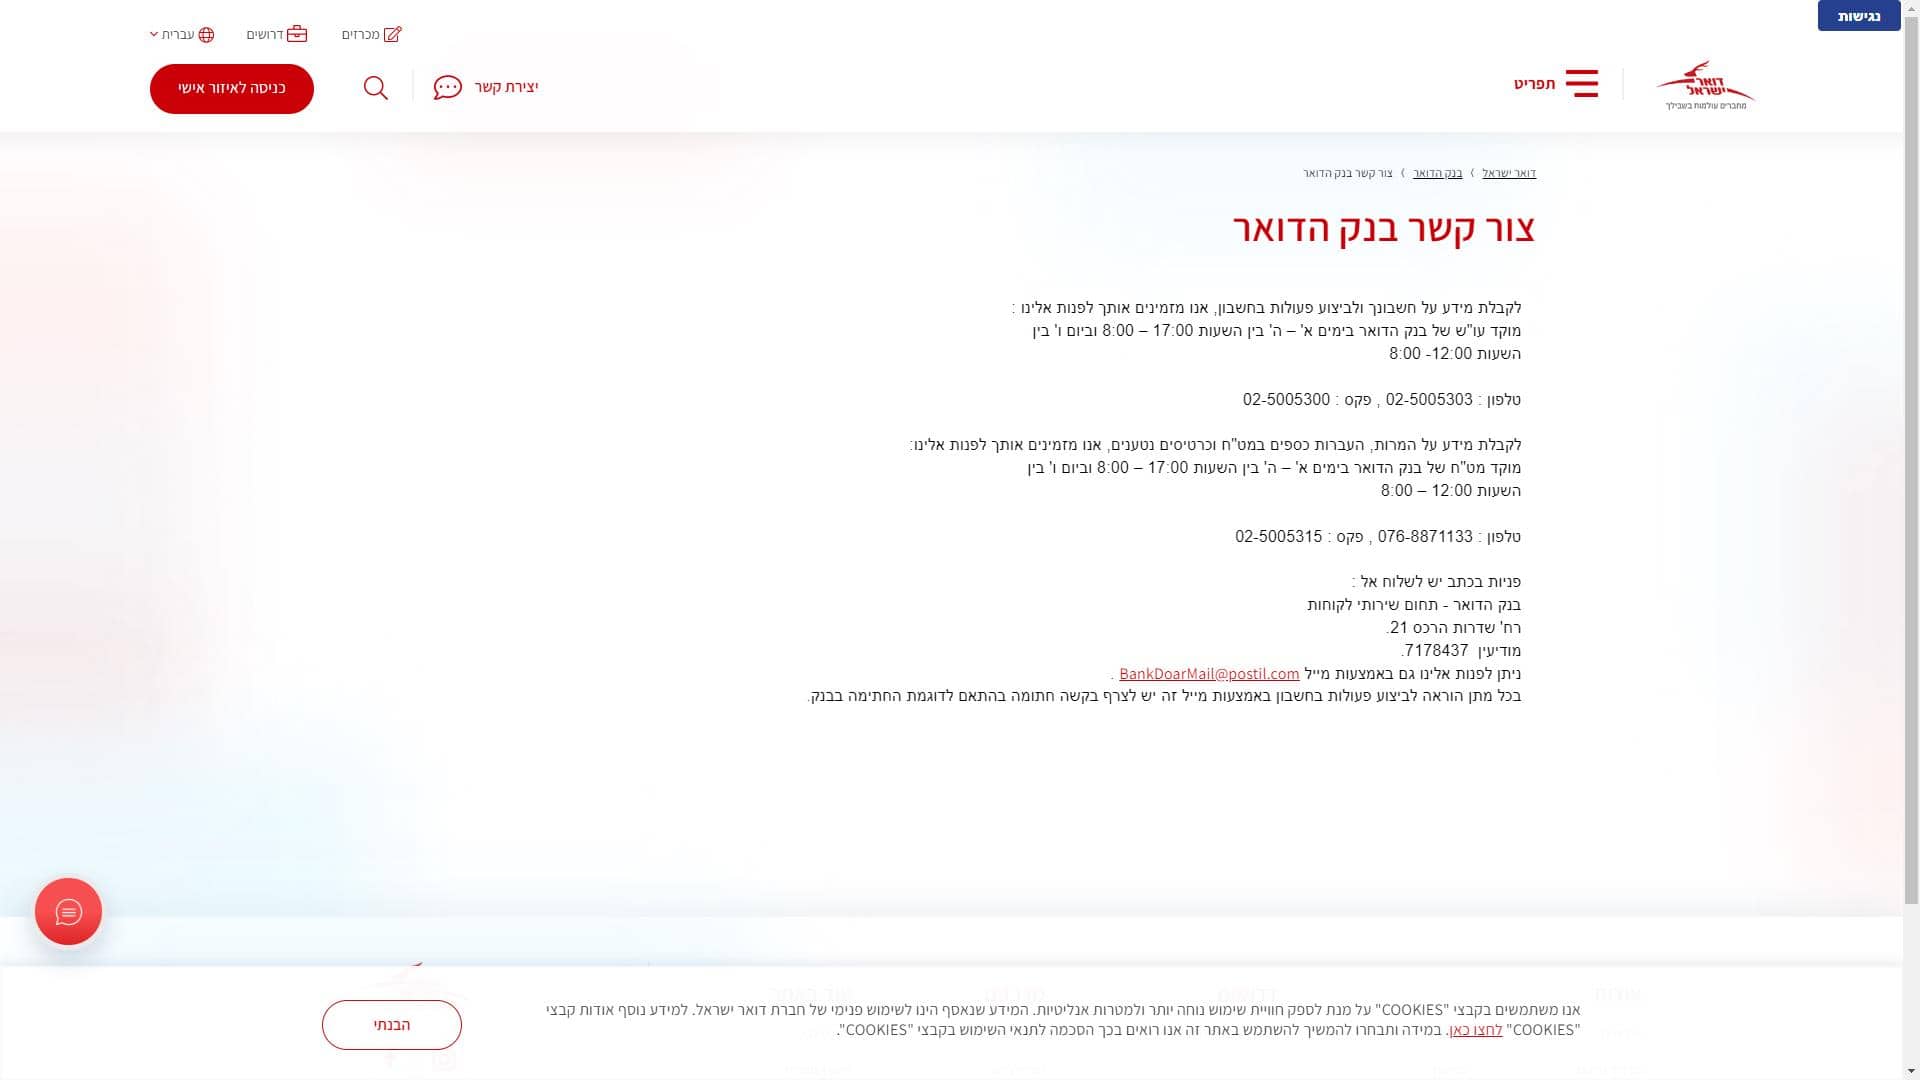 בנק הדואר דואר ישראל טופס יצירת קשר צילום מסך